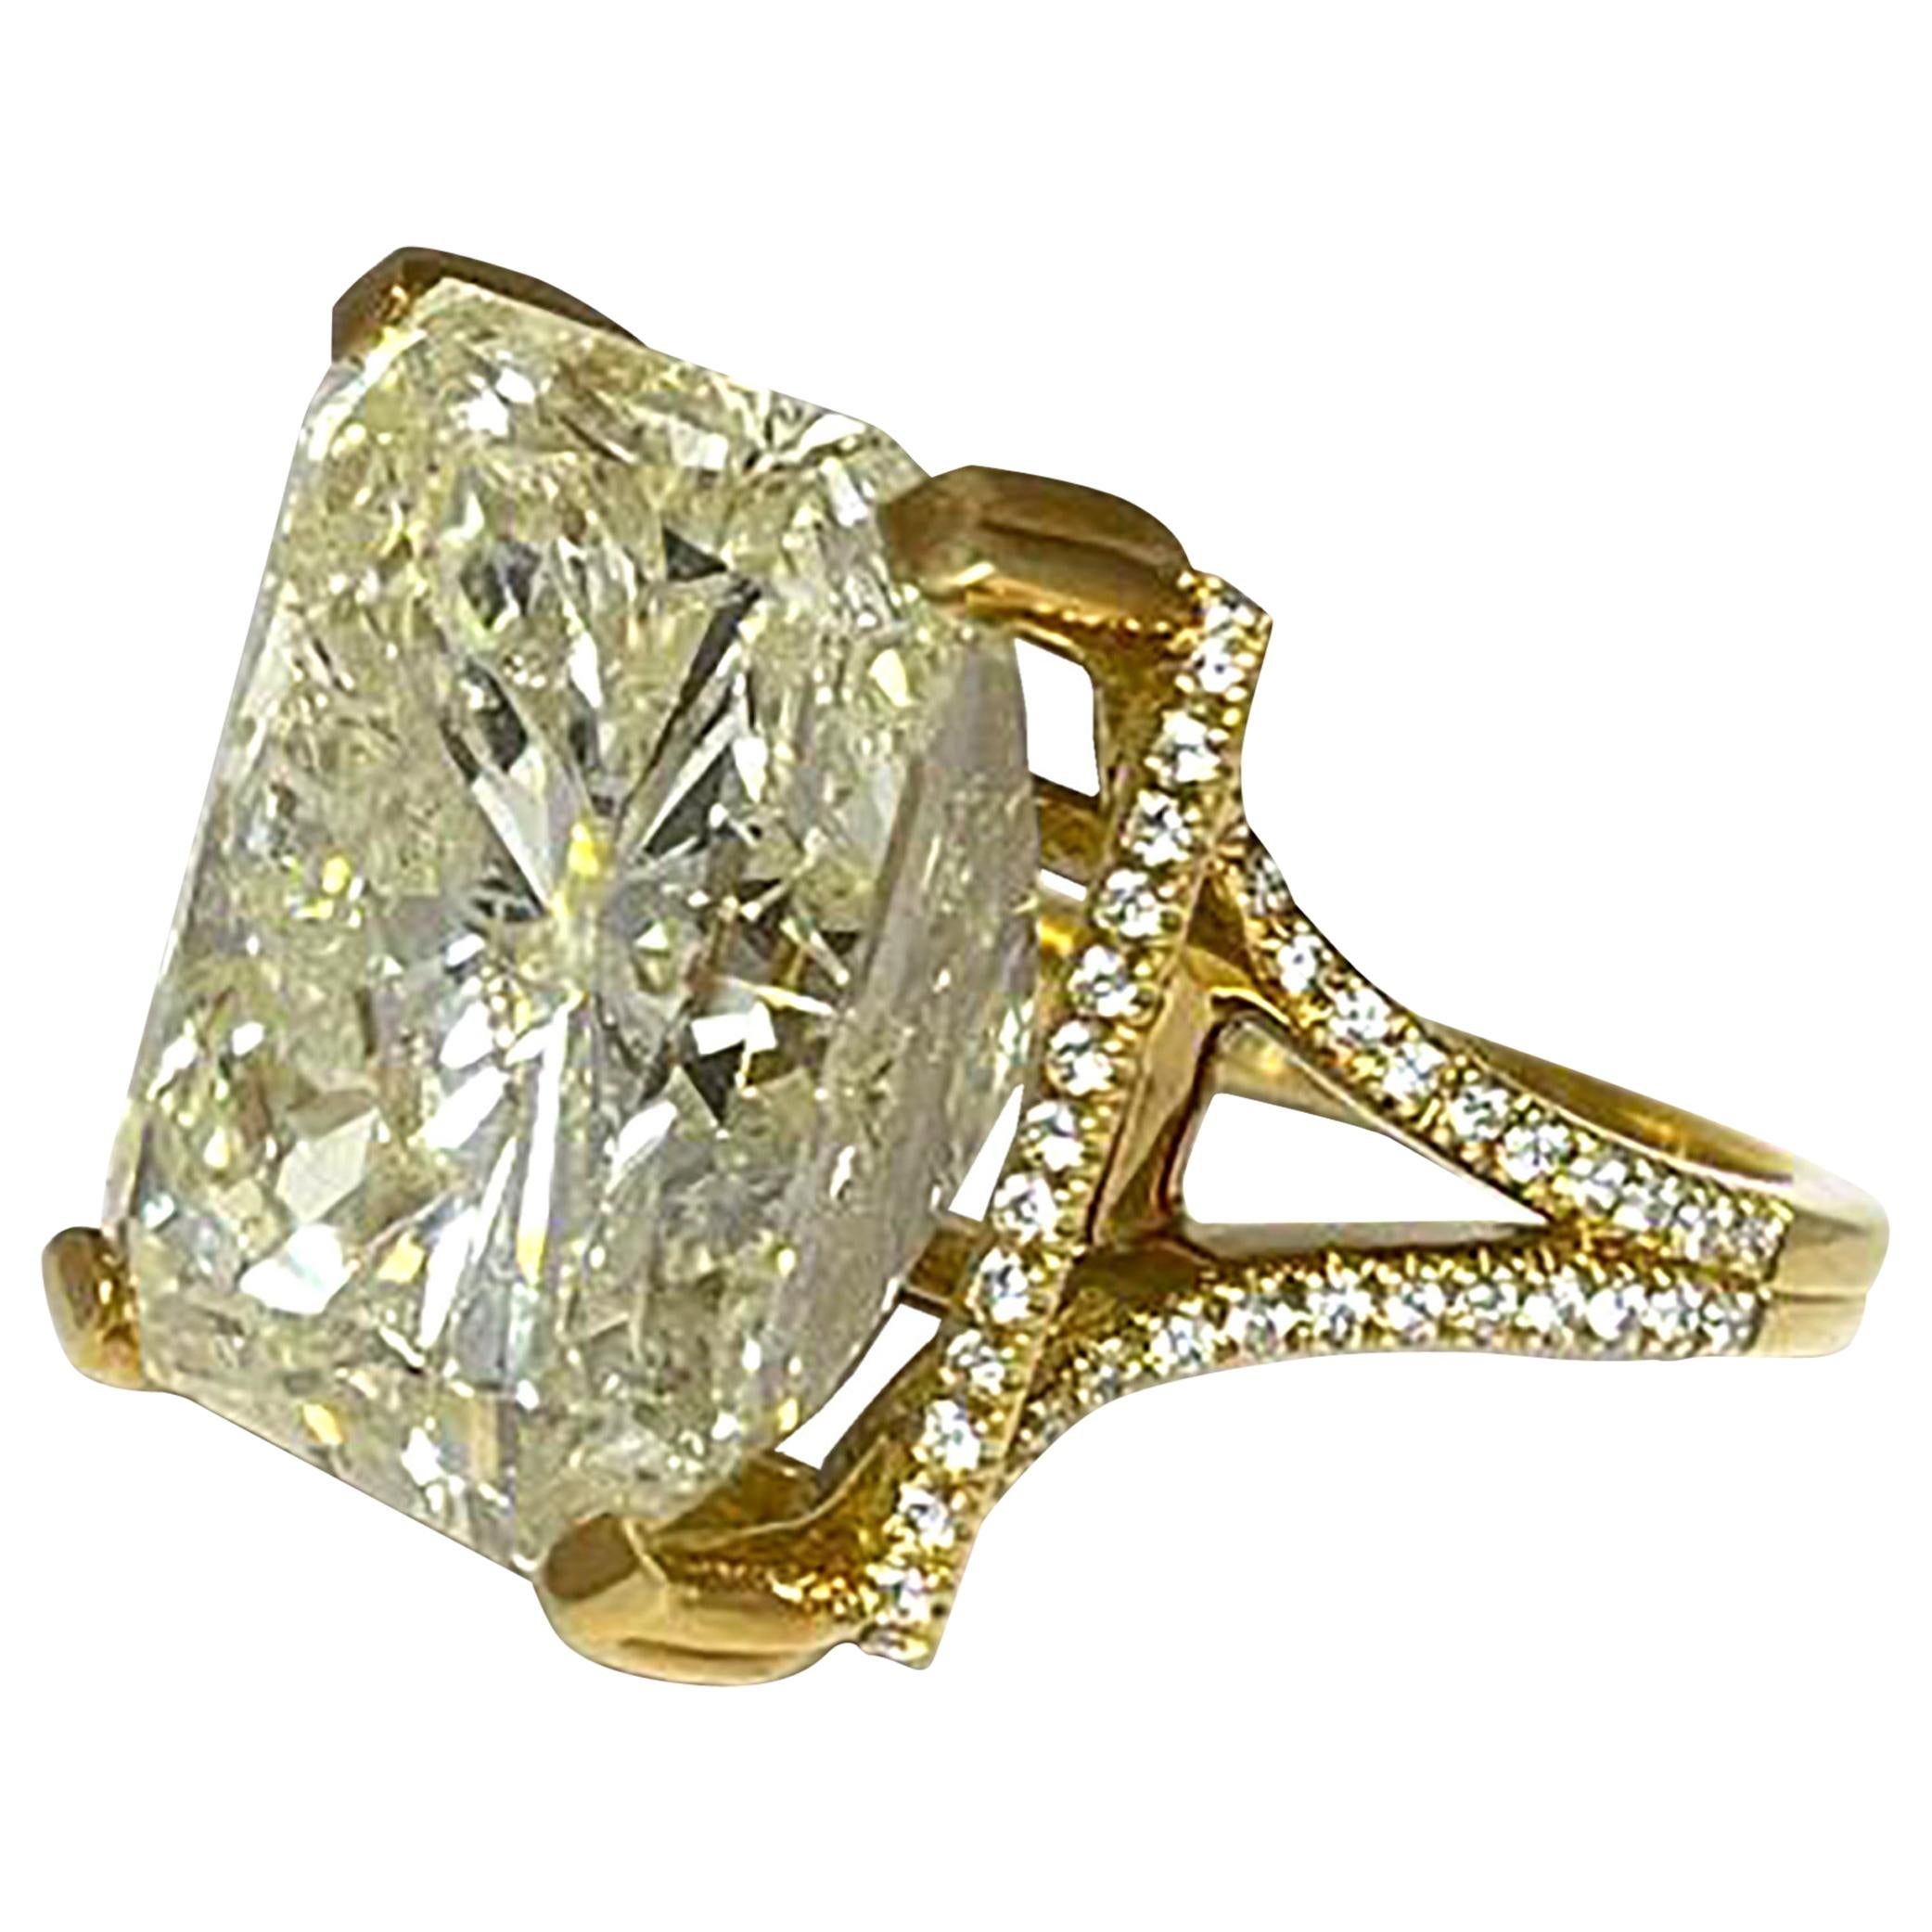 Diamond Ring Set in 18 Karat Gold with Diamonds Mounting